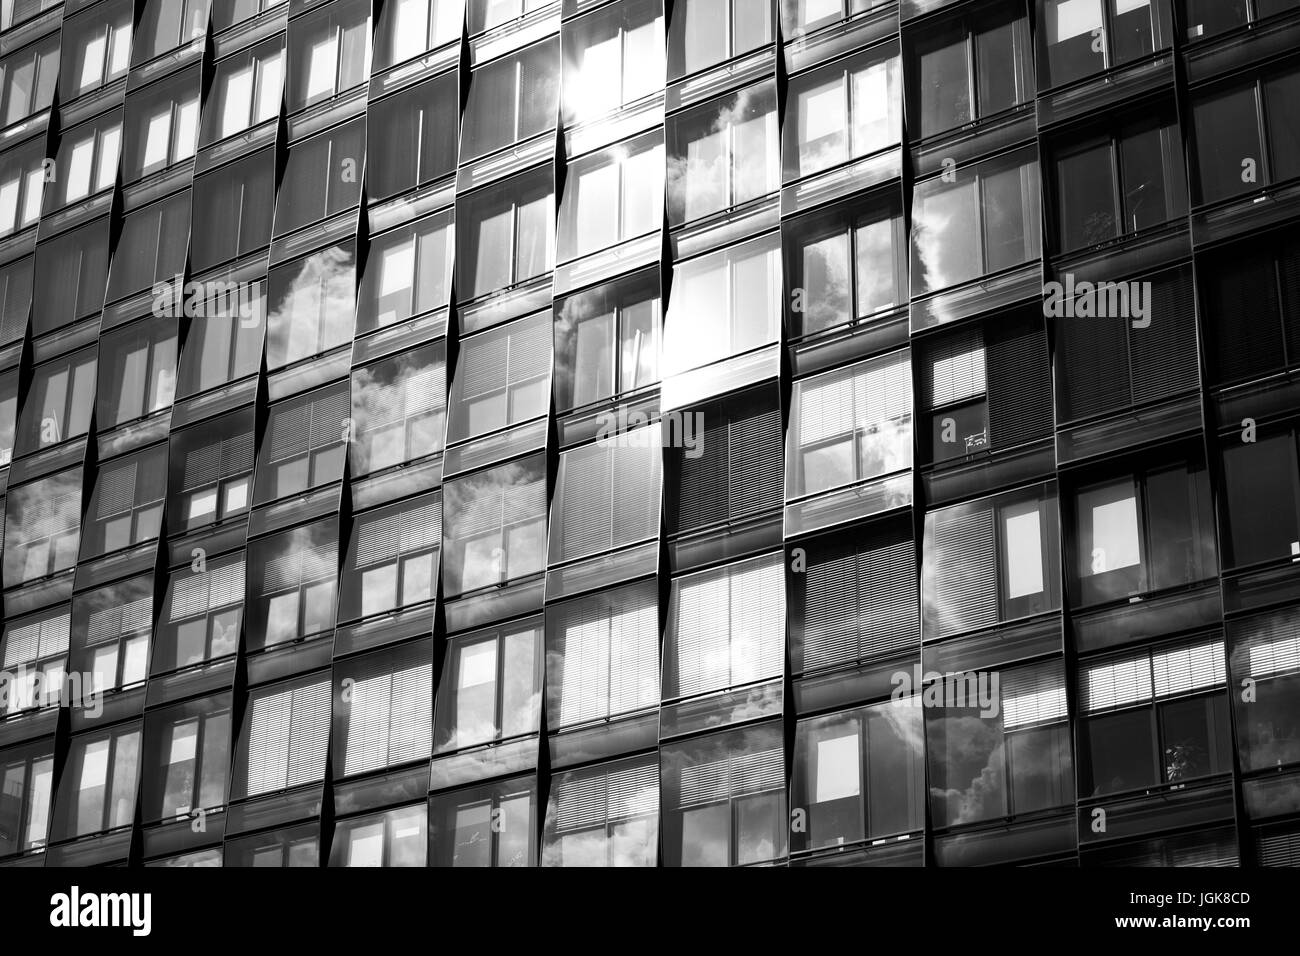 La façade de l'immeuble moderne - bureau windows sky reflet Banque D'Images